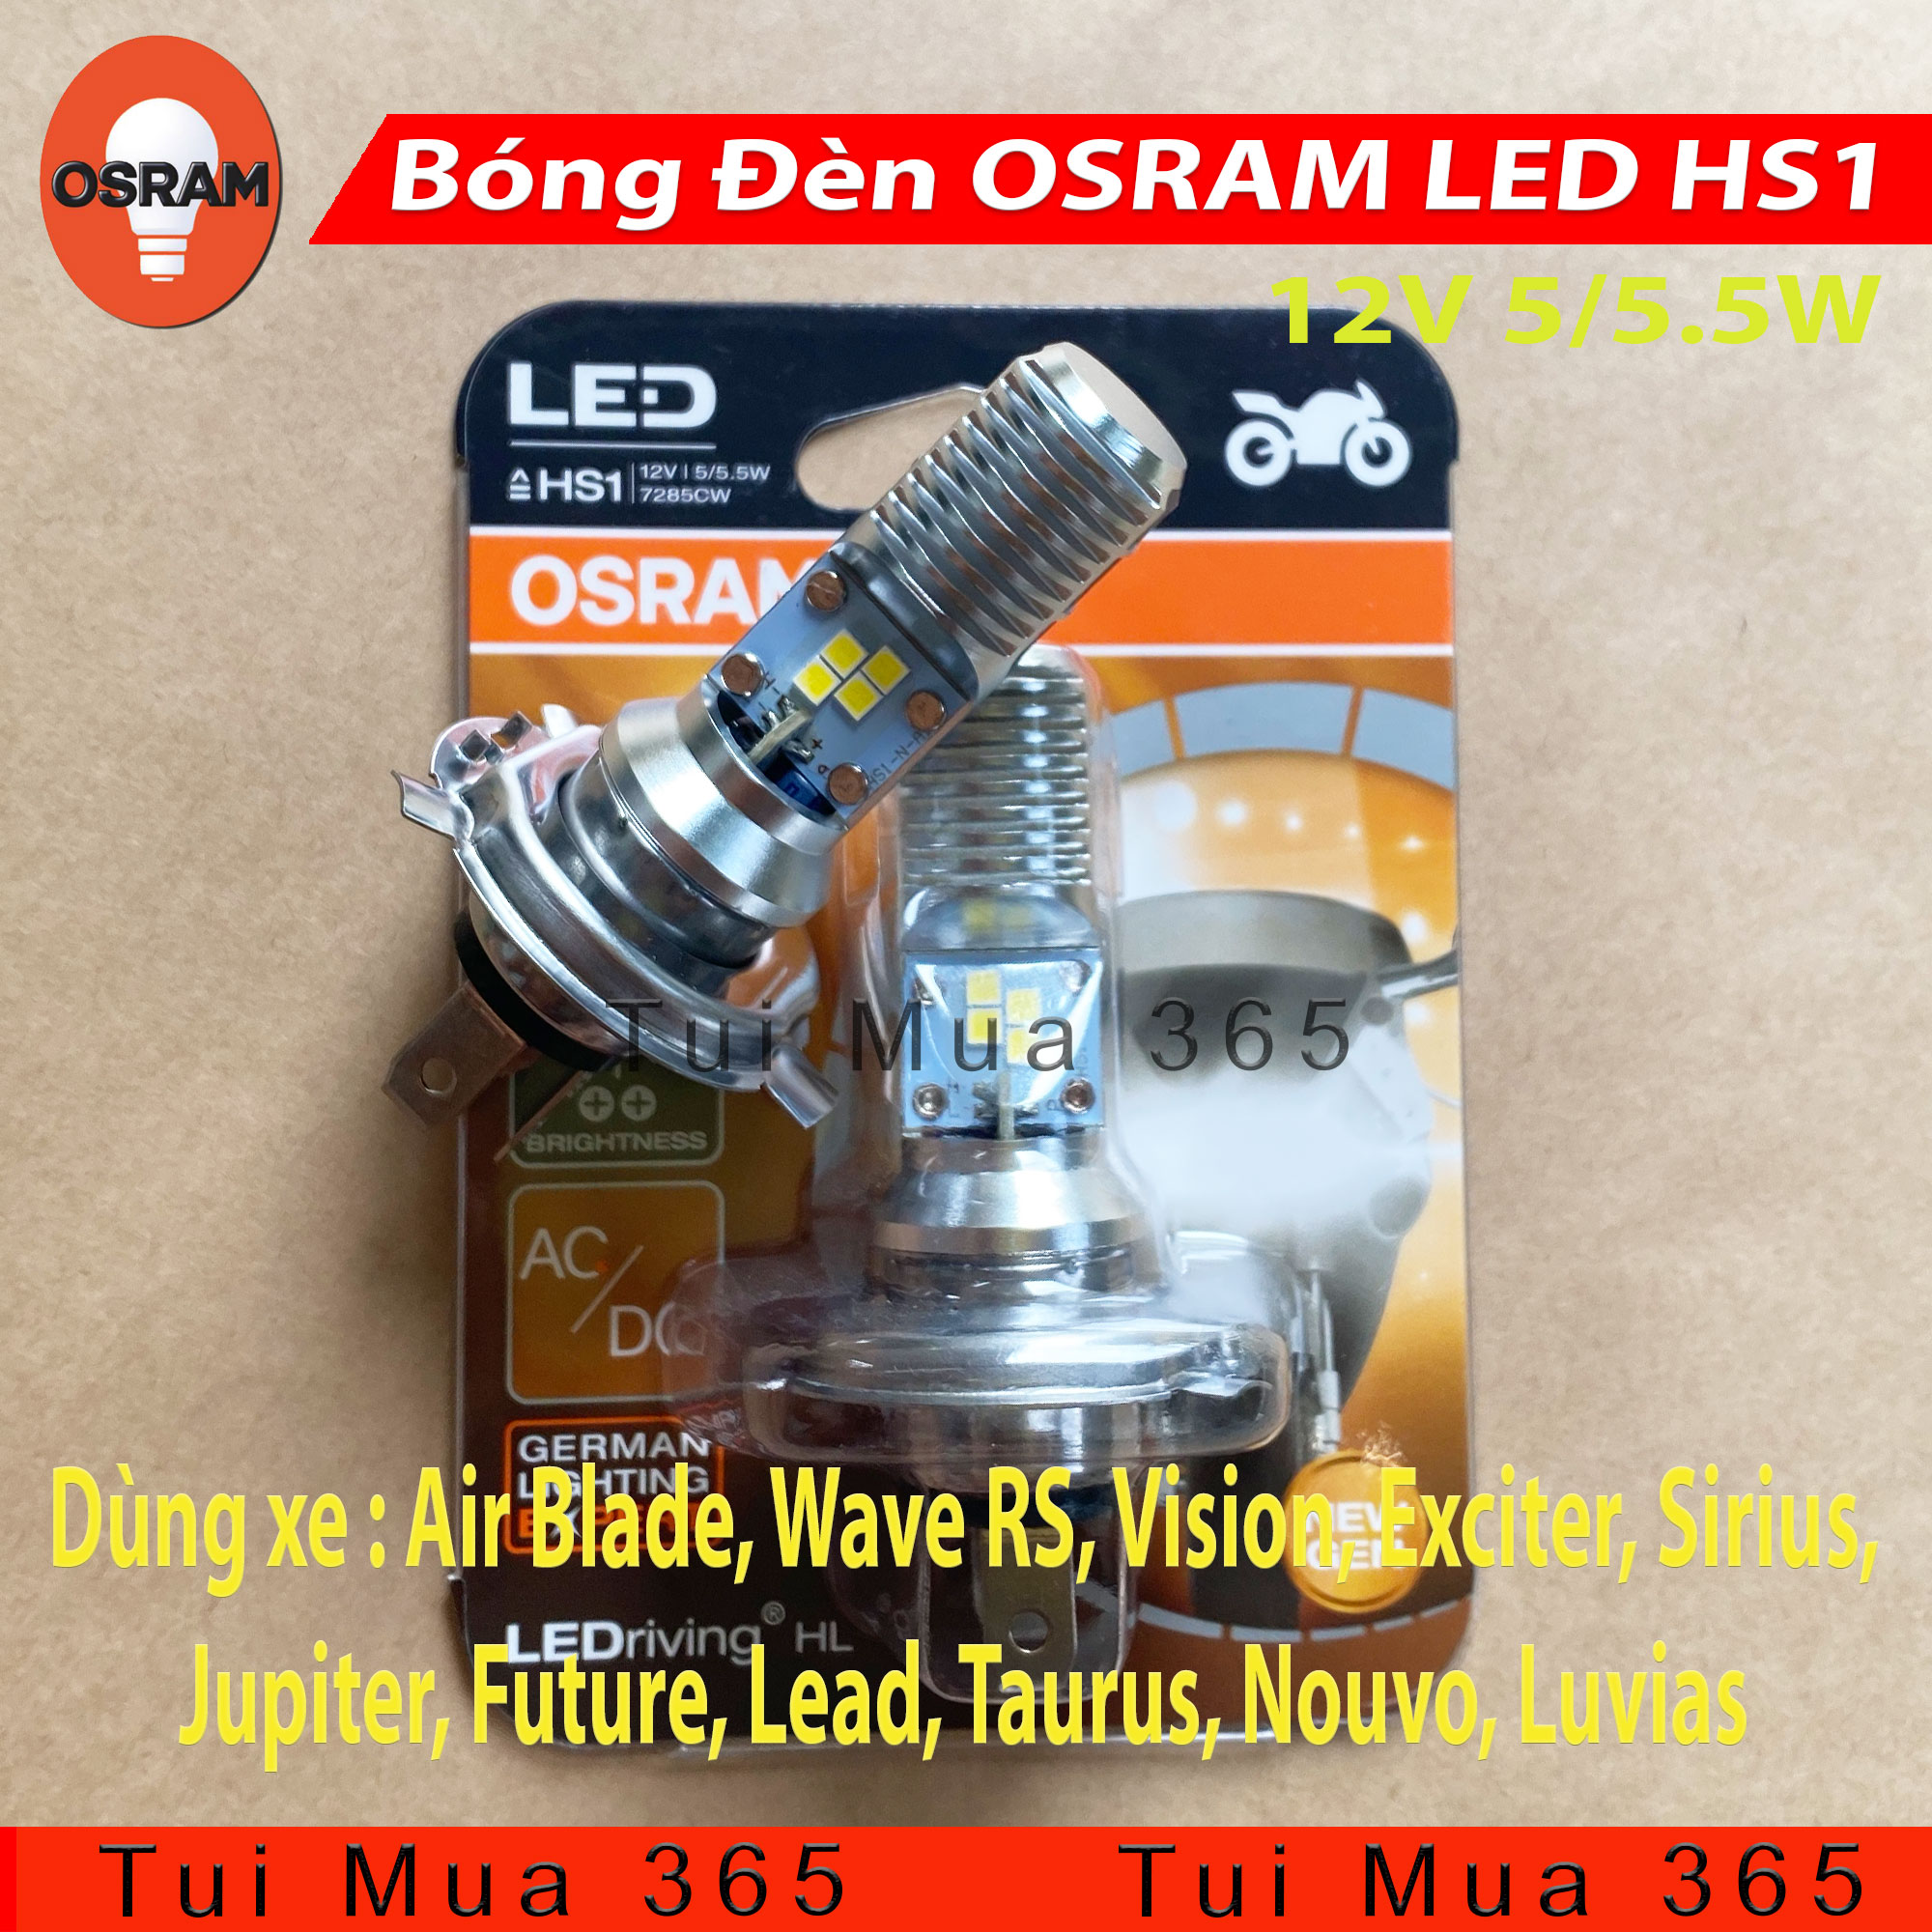 [HCM]Bóng đèn LED HS1 tăng sáng trắng OSRAM Air Blade Wave RS Vision Exciter Sirius Jupiter Future Lead Taurus Nouvo Luvias Spacy (AC/DC) - 100% Hàng chính hãng